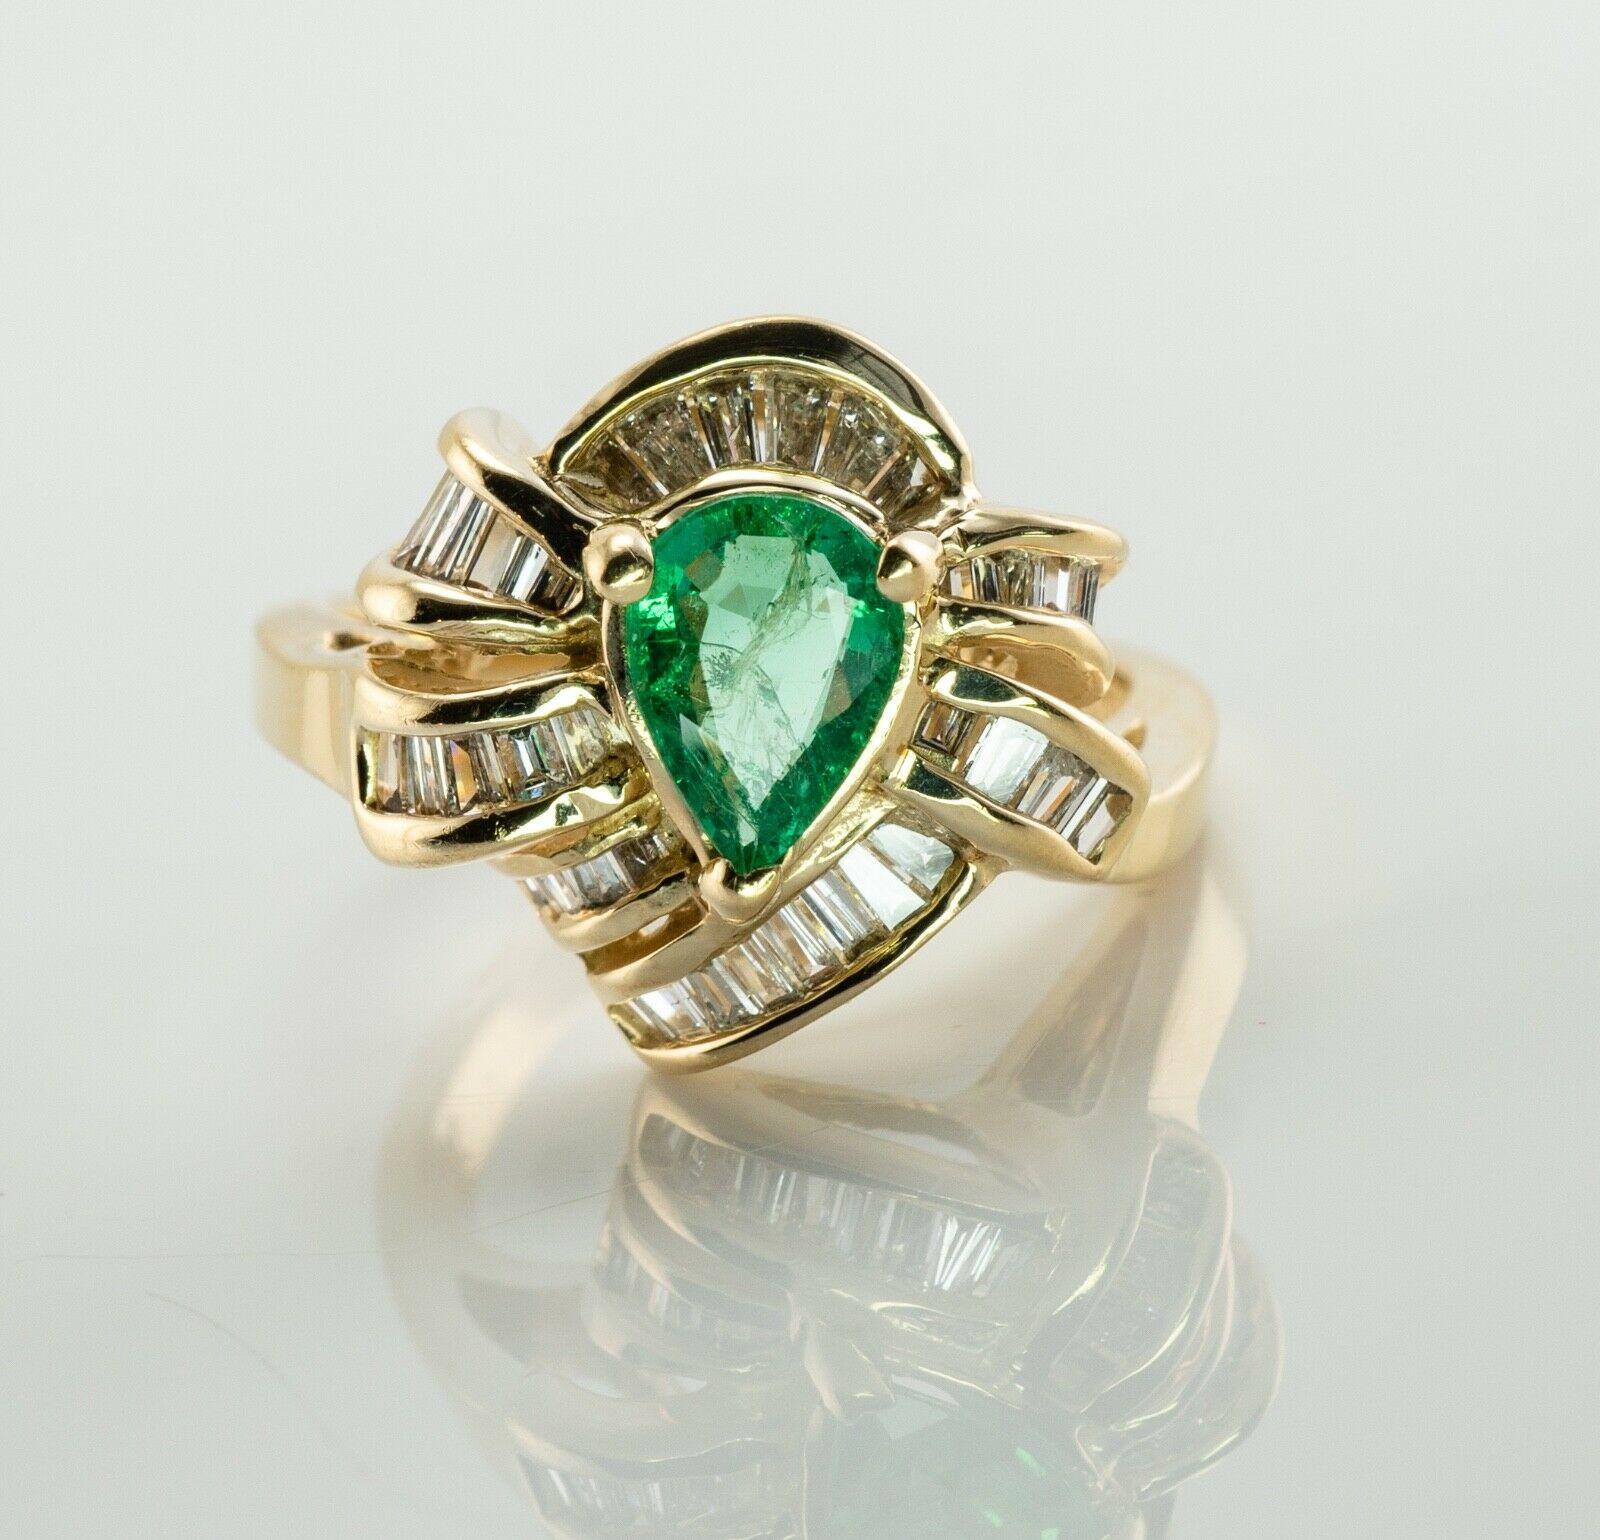 Dieser wunderschöne Ring ist aus massivem 14-karätigem Gelbgold gefertigt und mit einem echten Smaragd und natürlichen Diamanten besetzt. Der zentrale Smaragd im Birnenschliff misst 7 mm x 5 mm (0,70 Karat) und ist ein sehr sauberer und